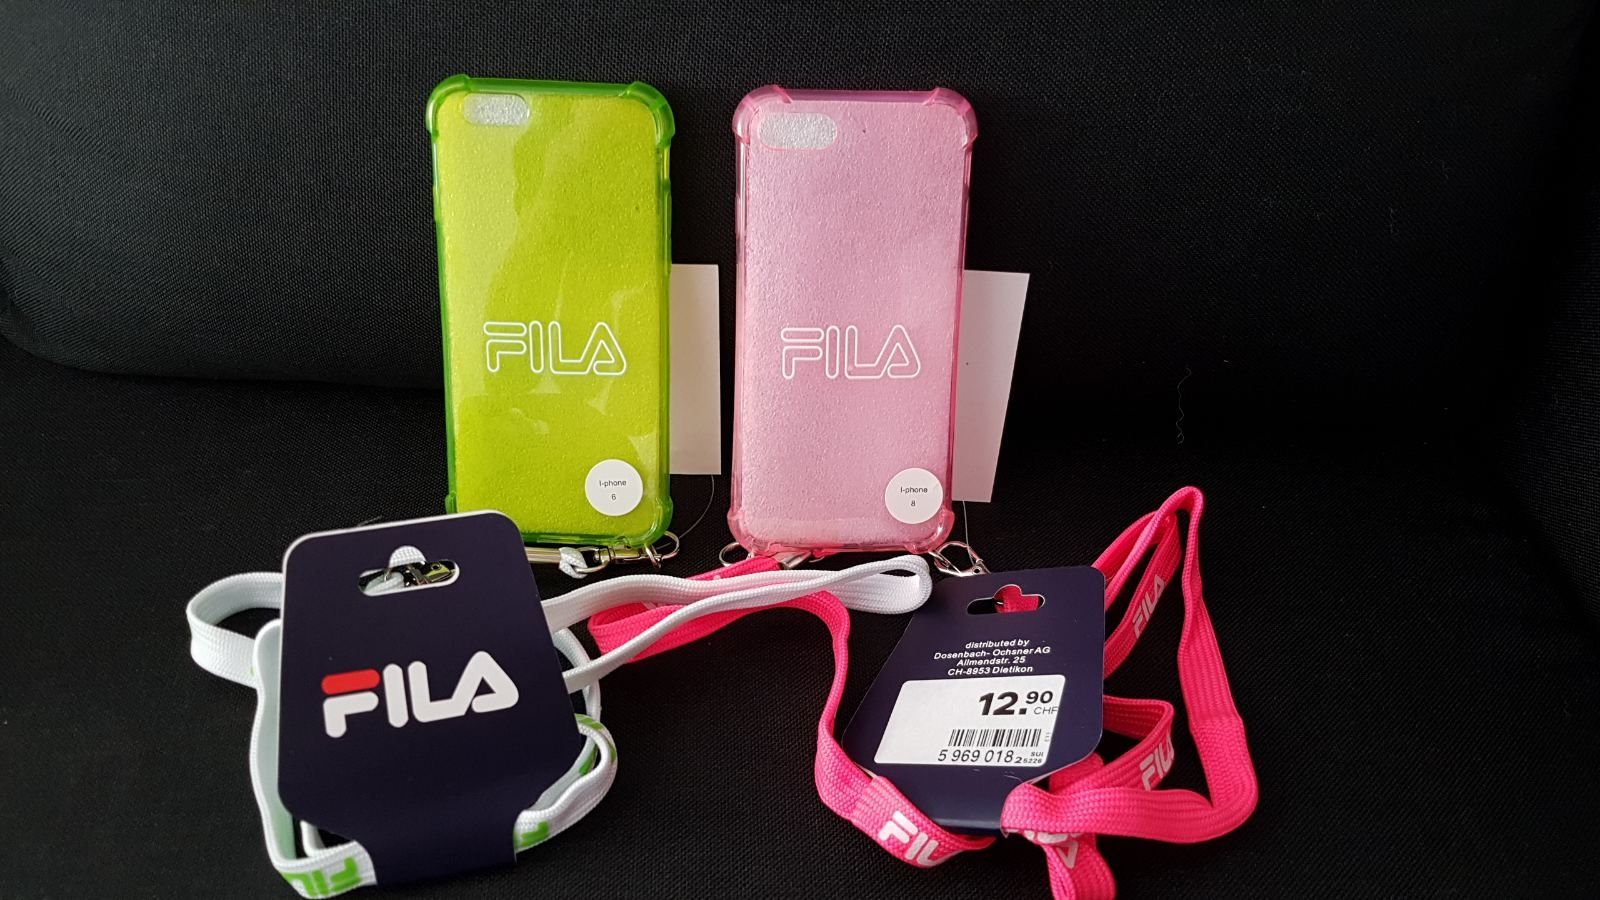 Чехлы для телефона IPhone 6,7,8 фирмы Fila,оригинал.